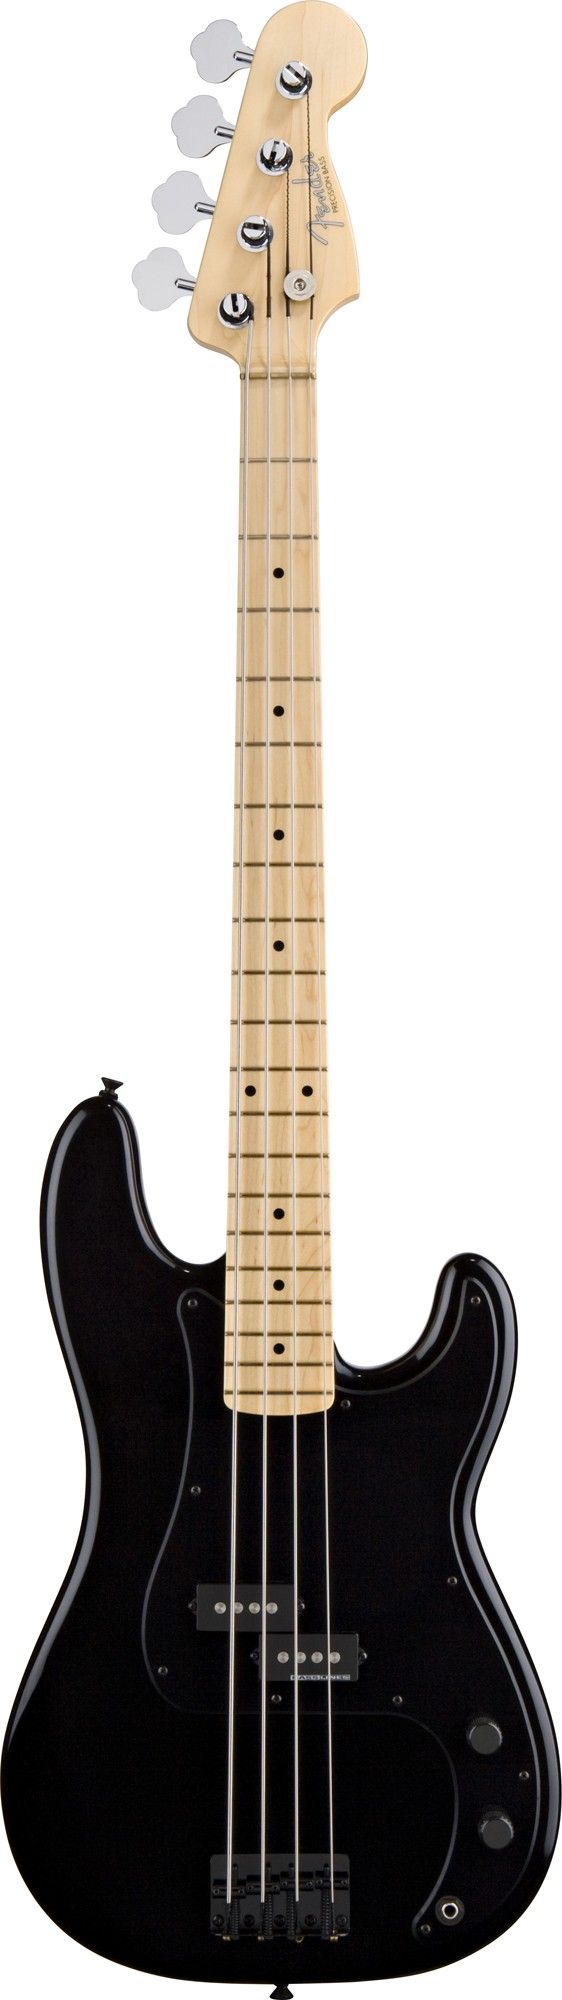 Fender Roger Waters Precision Bass® Guitar - 4 String Bass - Bass Guitars - Guitars